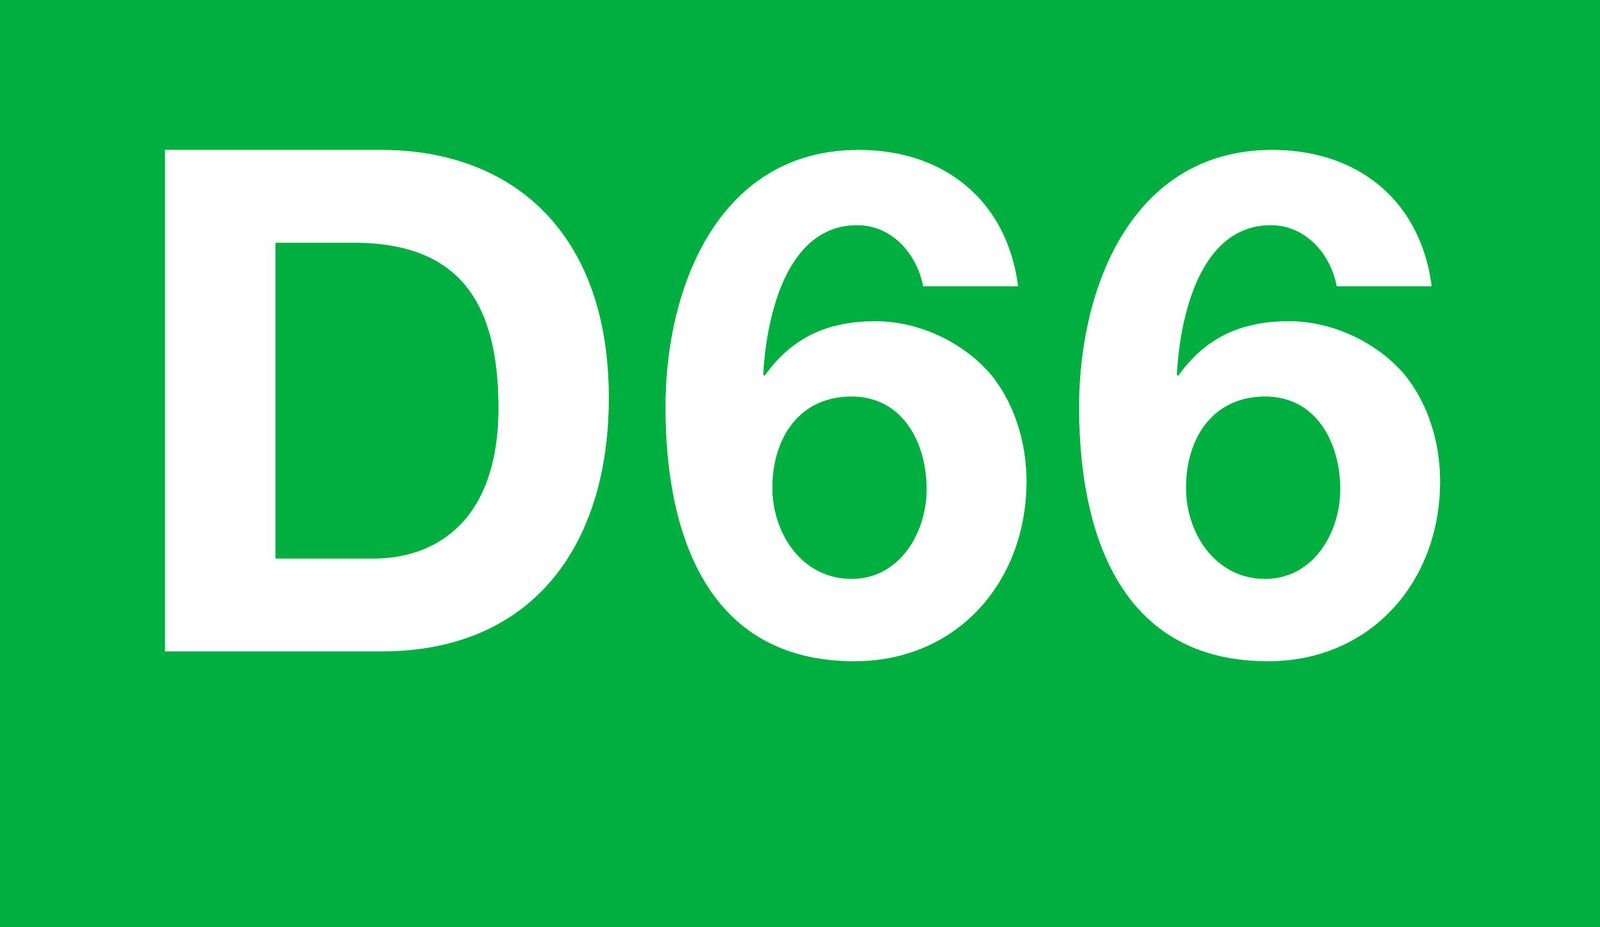 logo D66